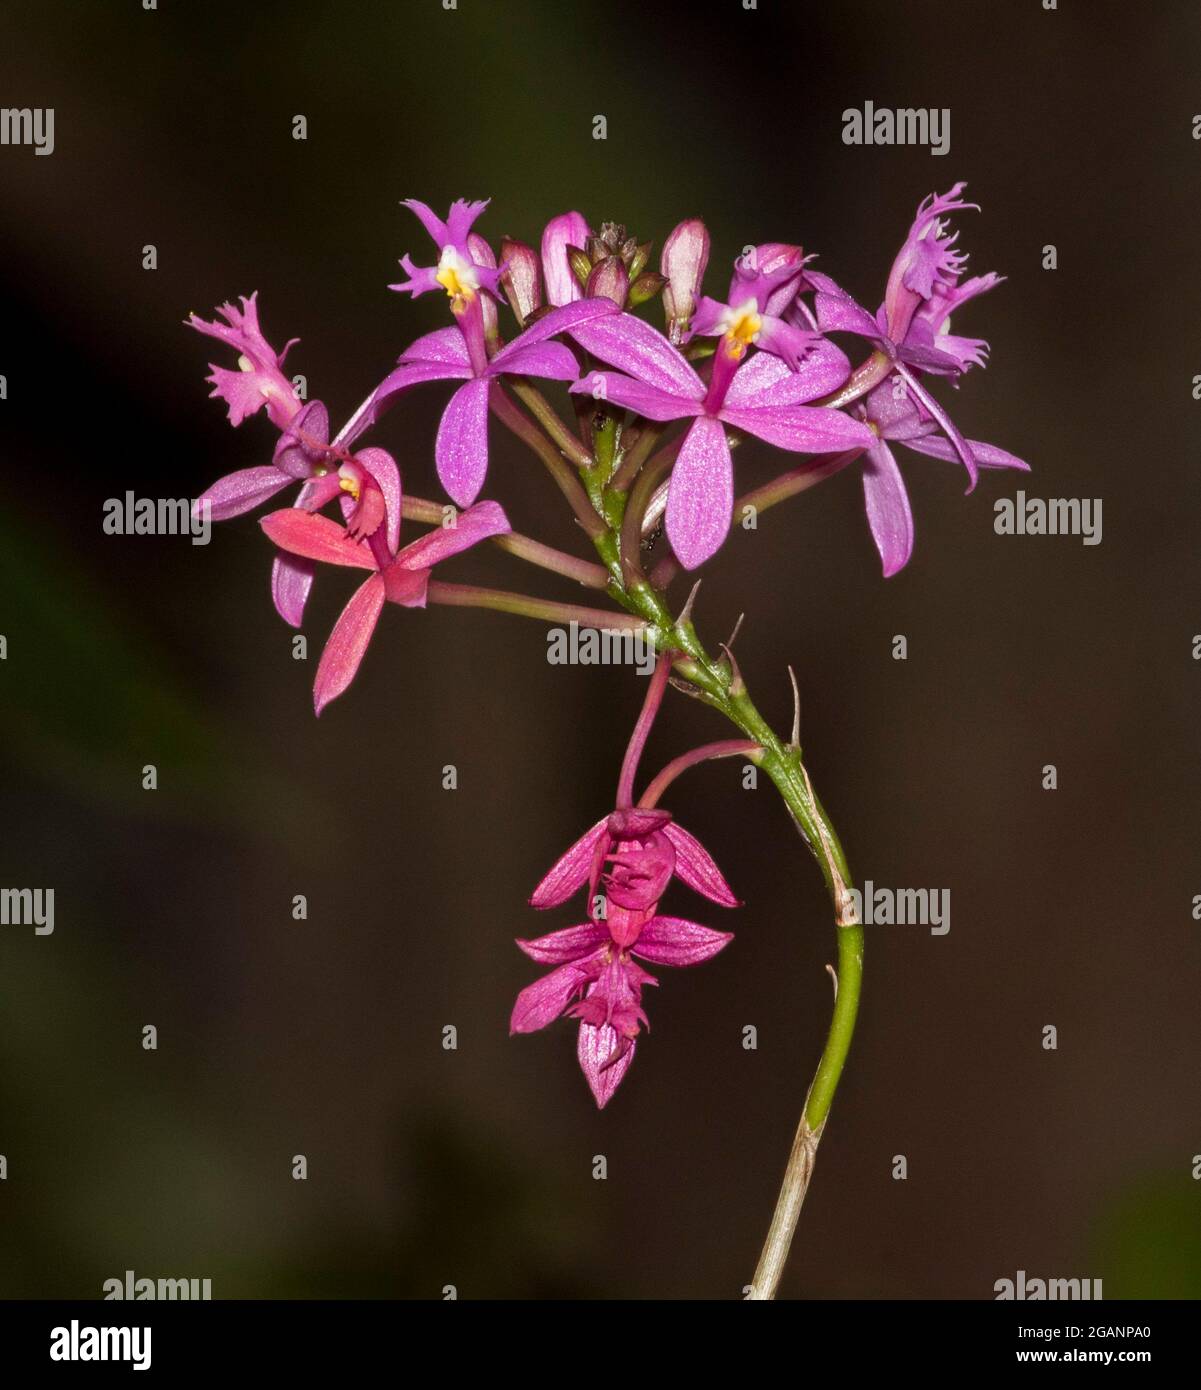 Ensemble de belles fleurs rouges/roses d'Epidendrum ibaguense, Crucifix Orchid, sur fond brun foncé, en Australie Banque D'Images